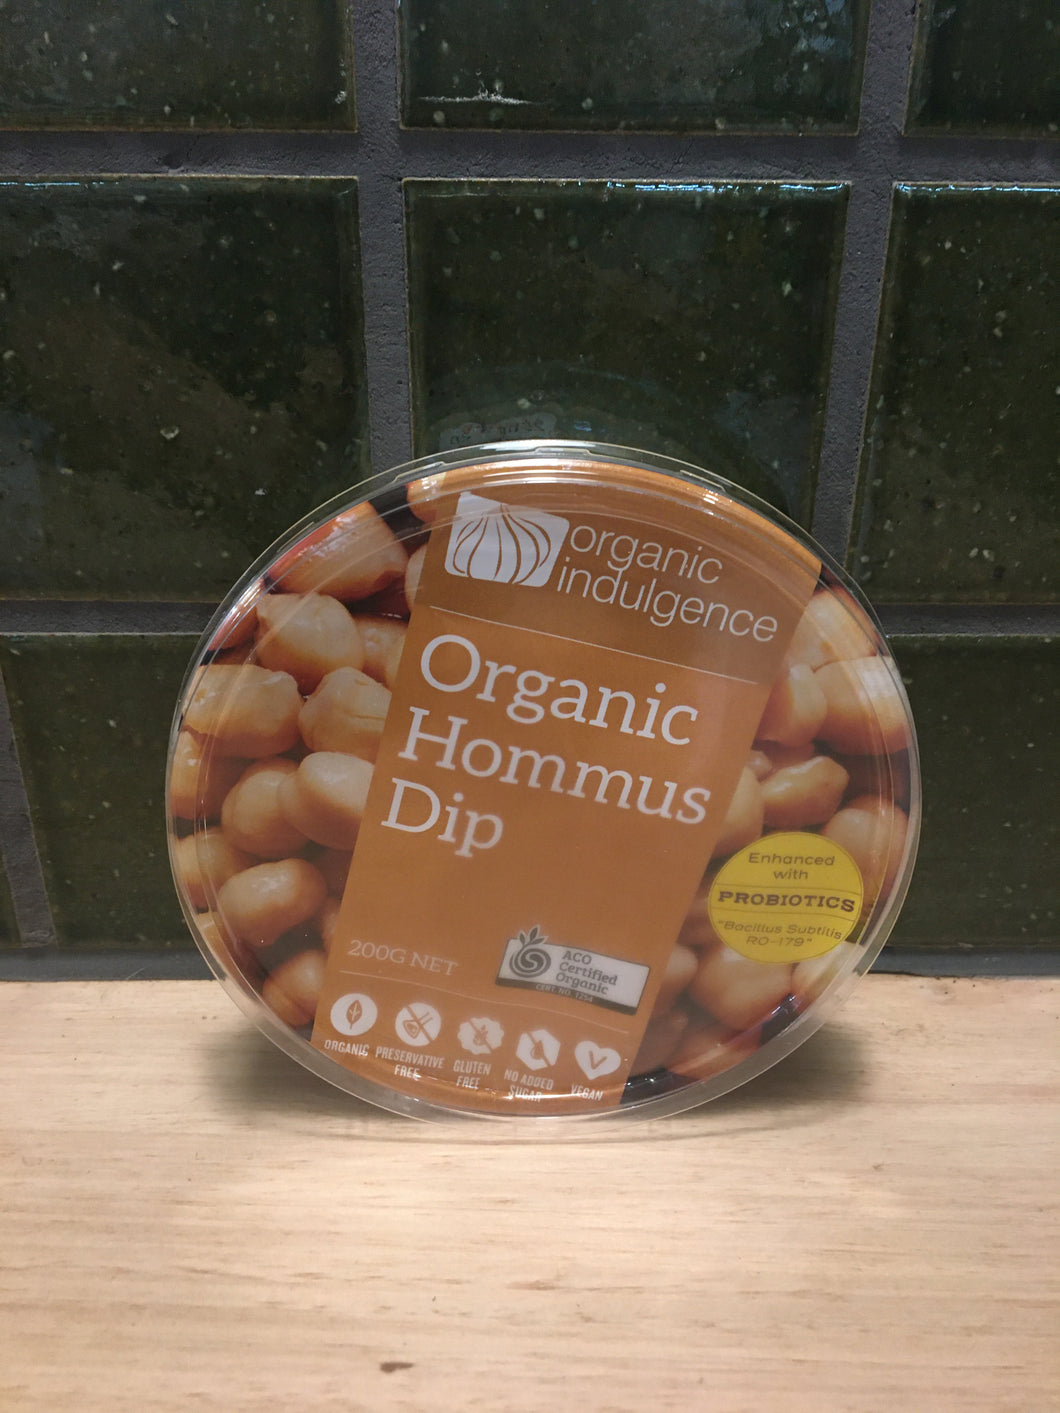 Organic Indulgence Dip Hommus 200g